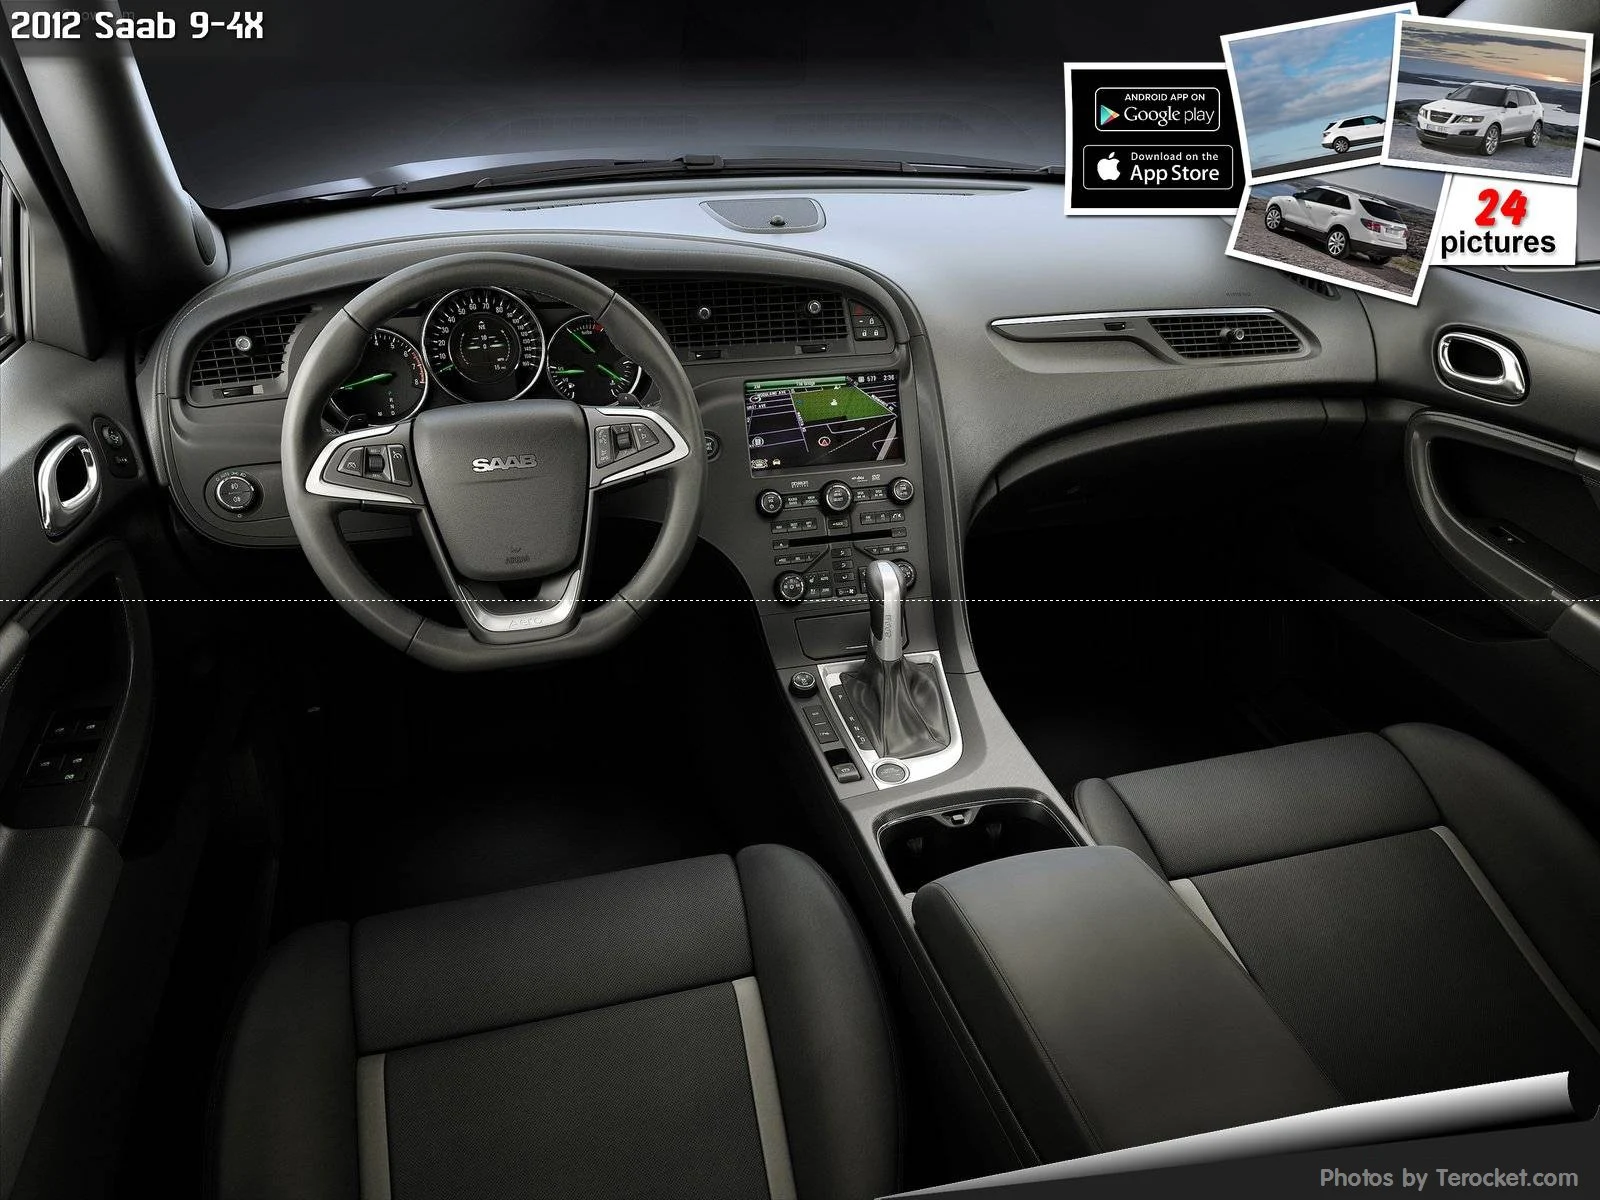 Hình ảnh xe ô tô Saab 9-4X 2012 & nội ngoại thất